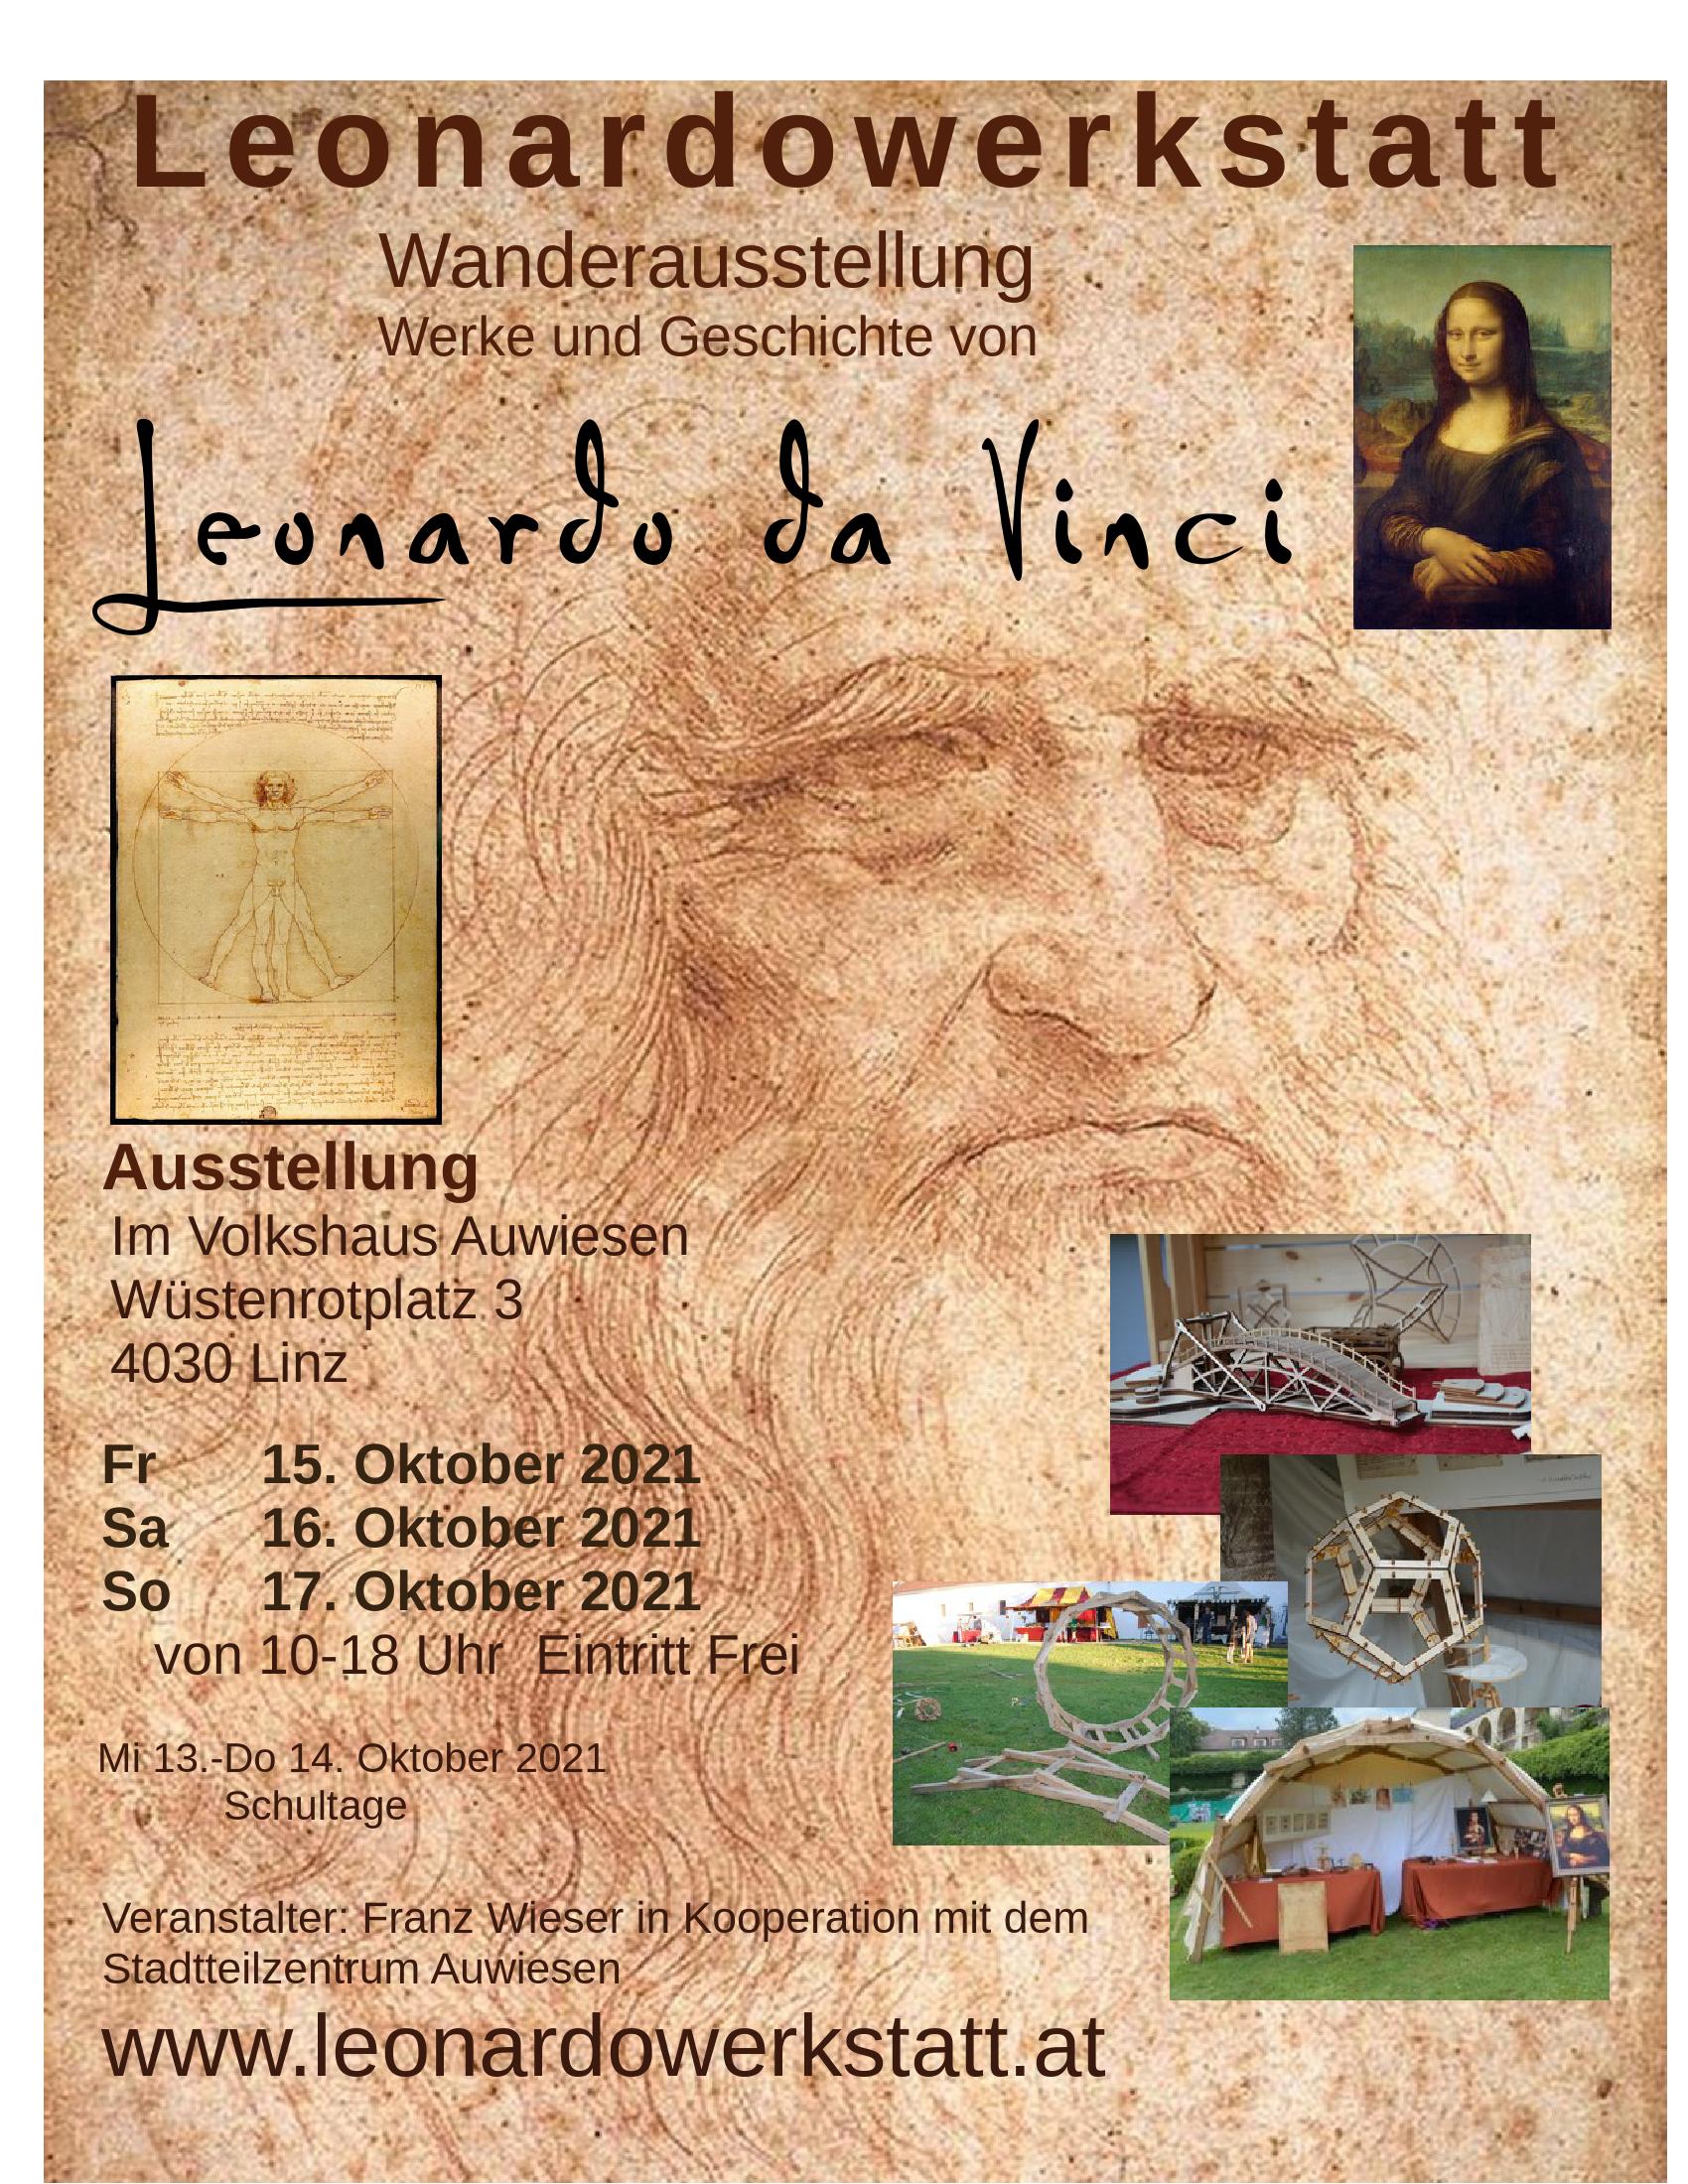 Leonardowerkstatt Ausstellung Linz